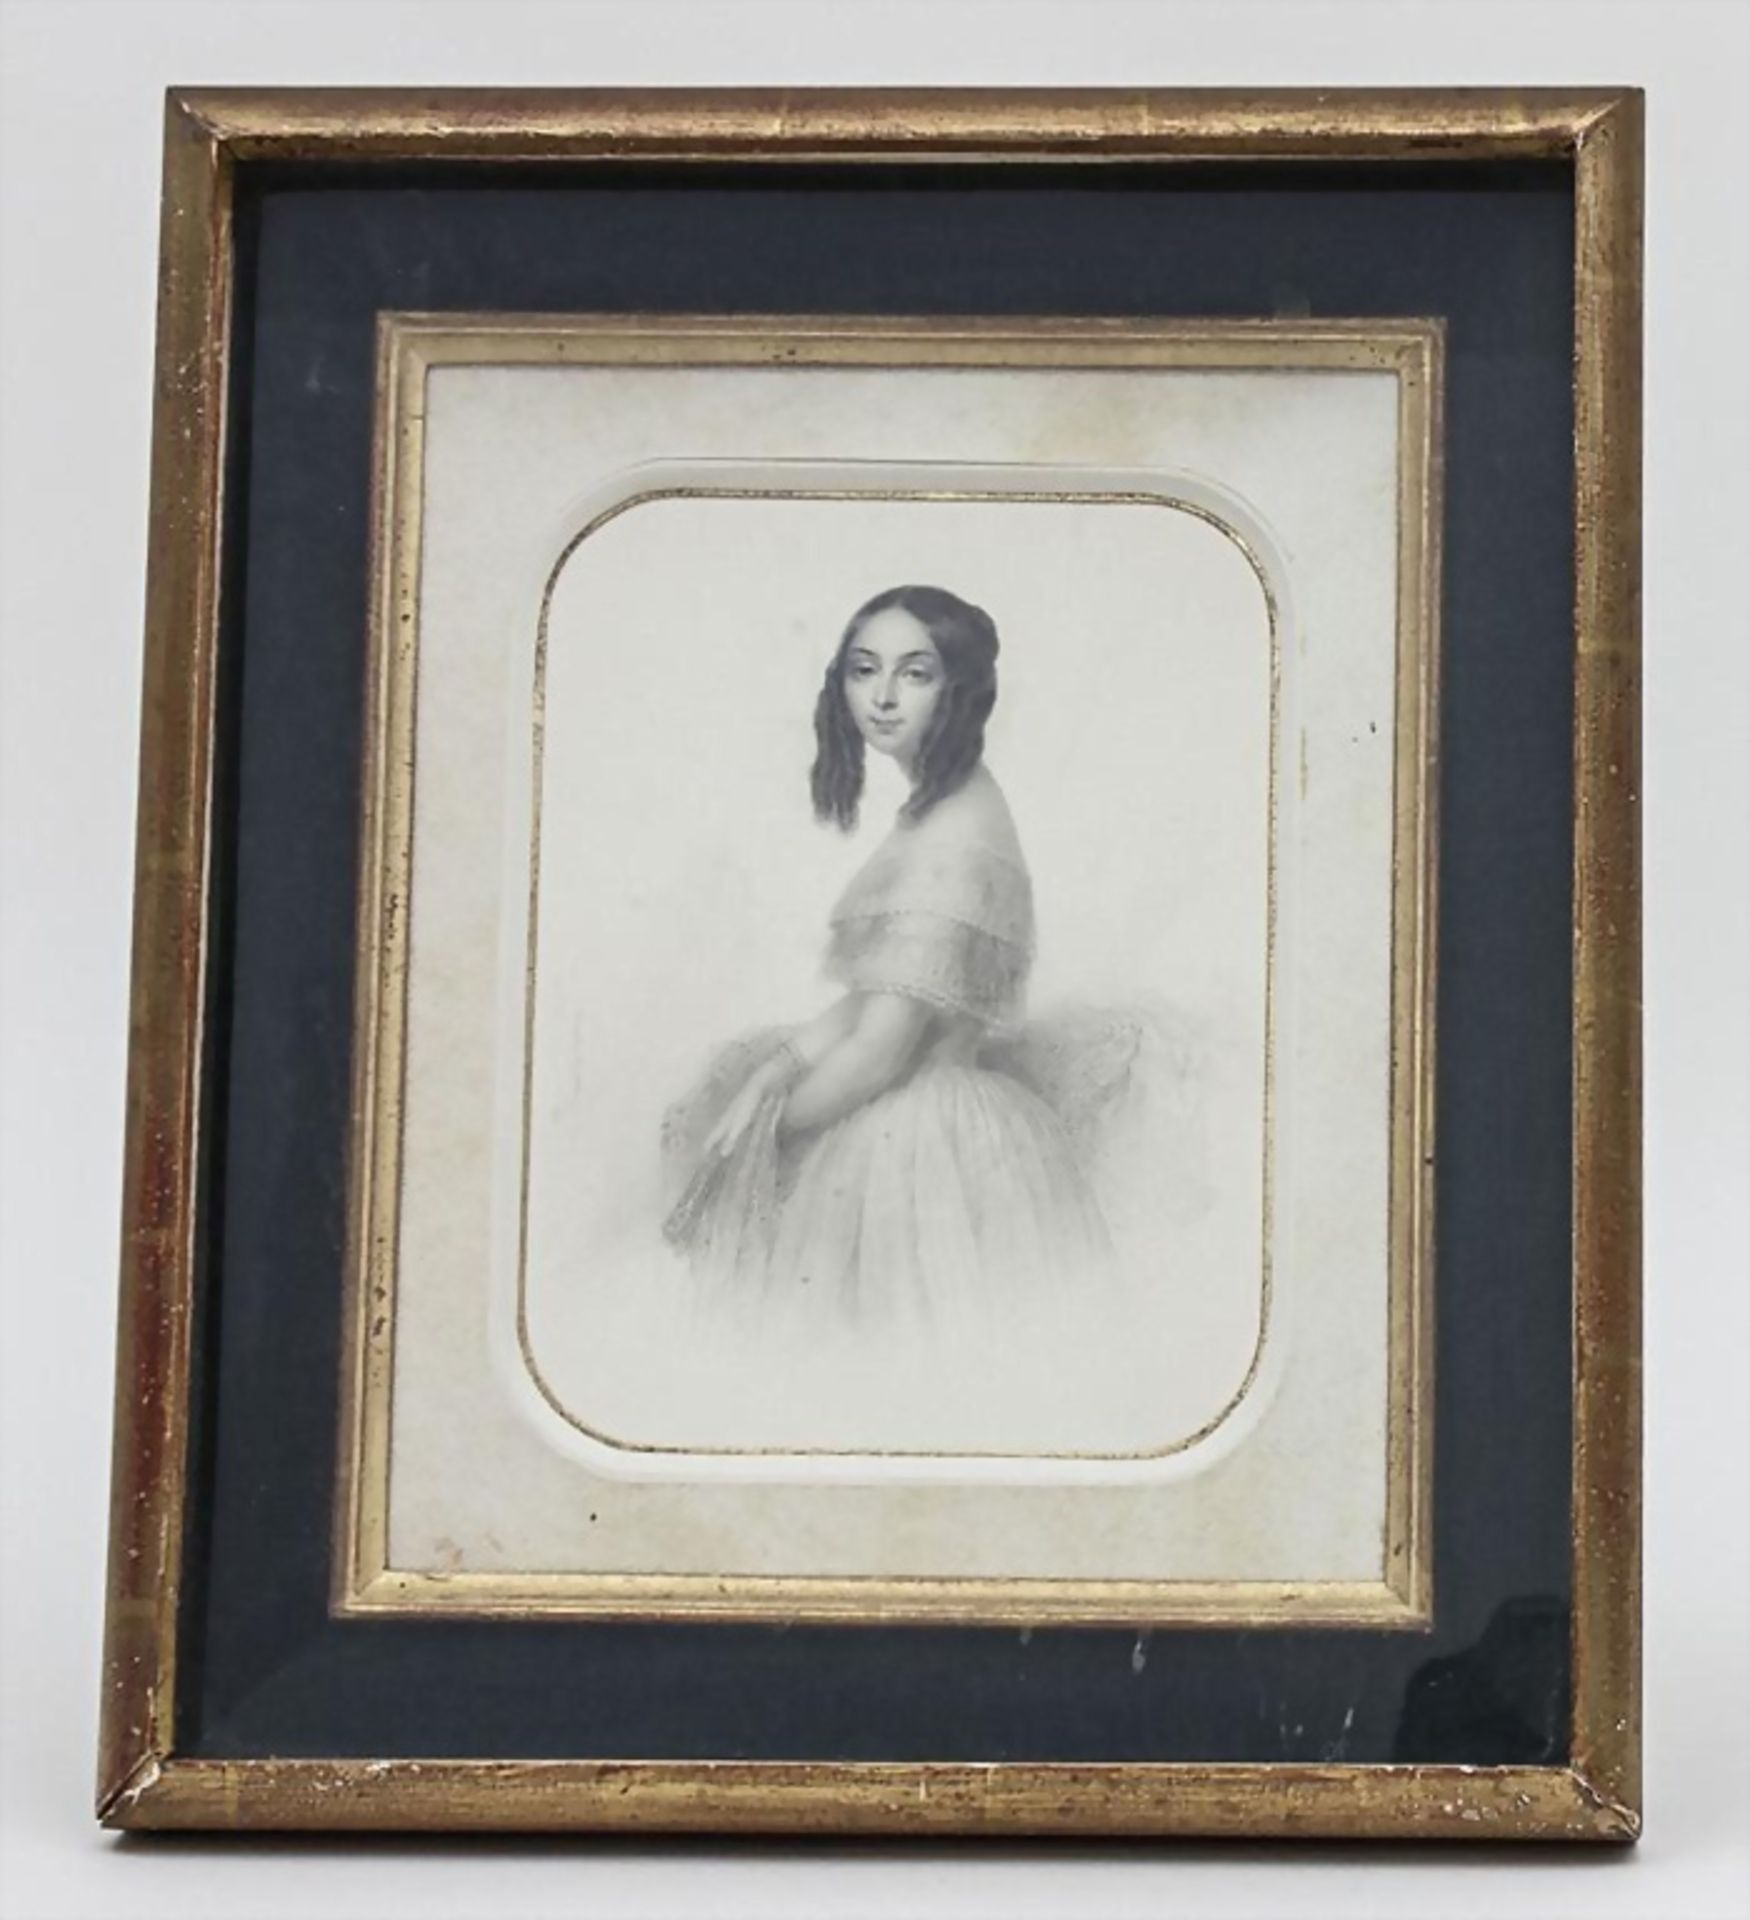 Hyppolitez (Hippolyte) Masson, Porträt einer jungen Dame, 1850 - Image 3 of 3